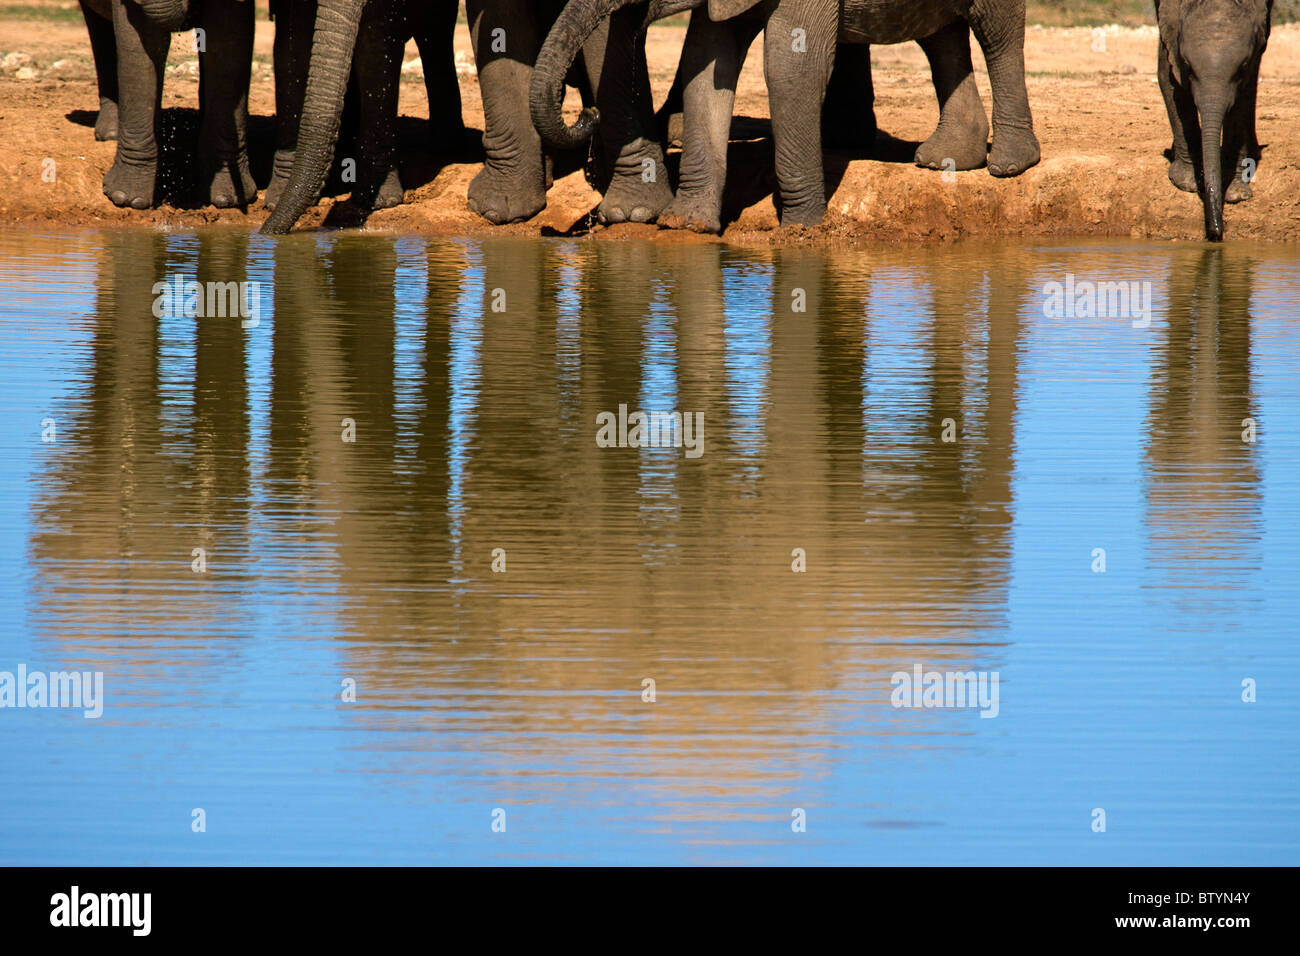 Una familia sedientos de elefante grande beber agua fresca en un gran charco. La recién nacida de la derecha es arriesgarse a meterse en el agua... Foto de stock